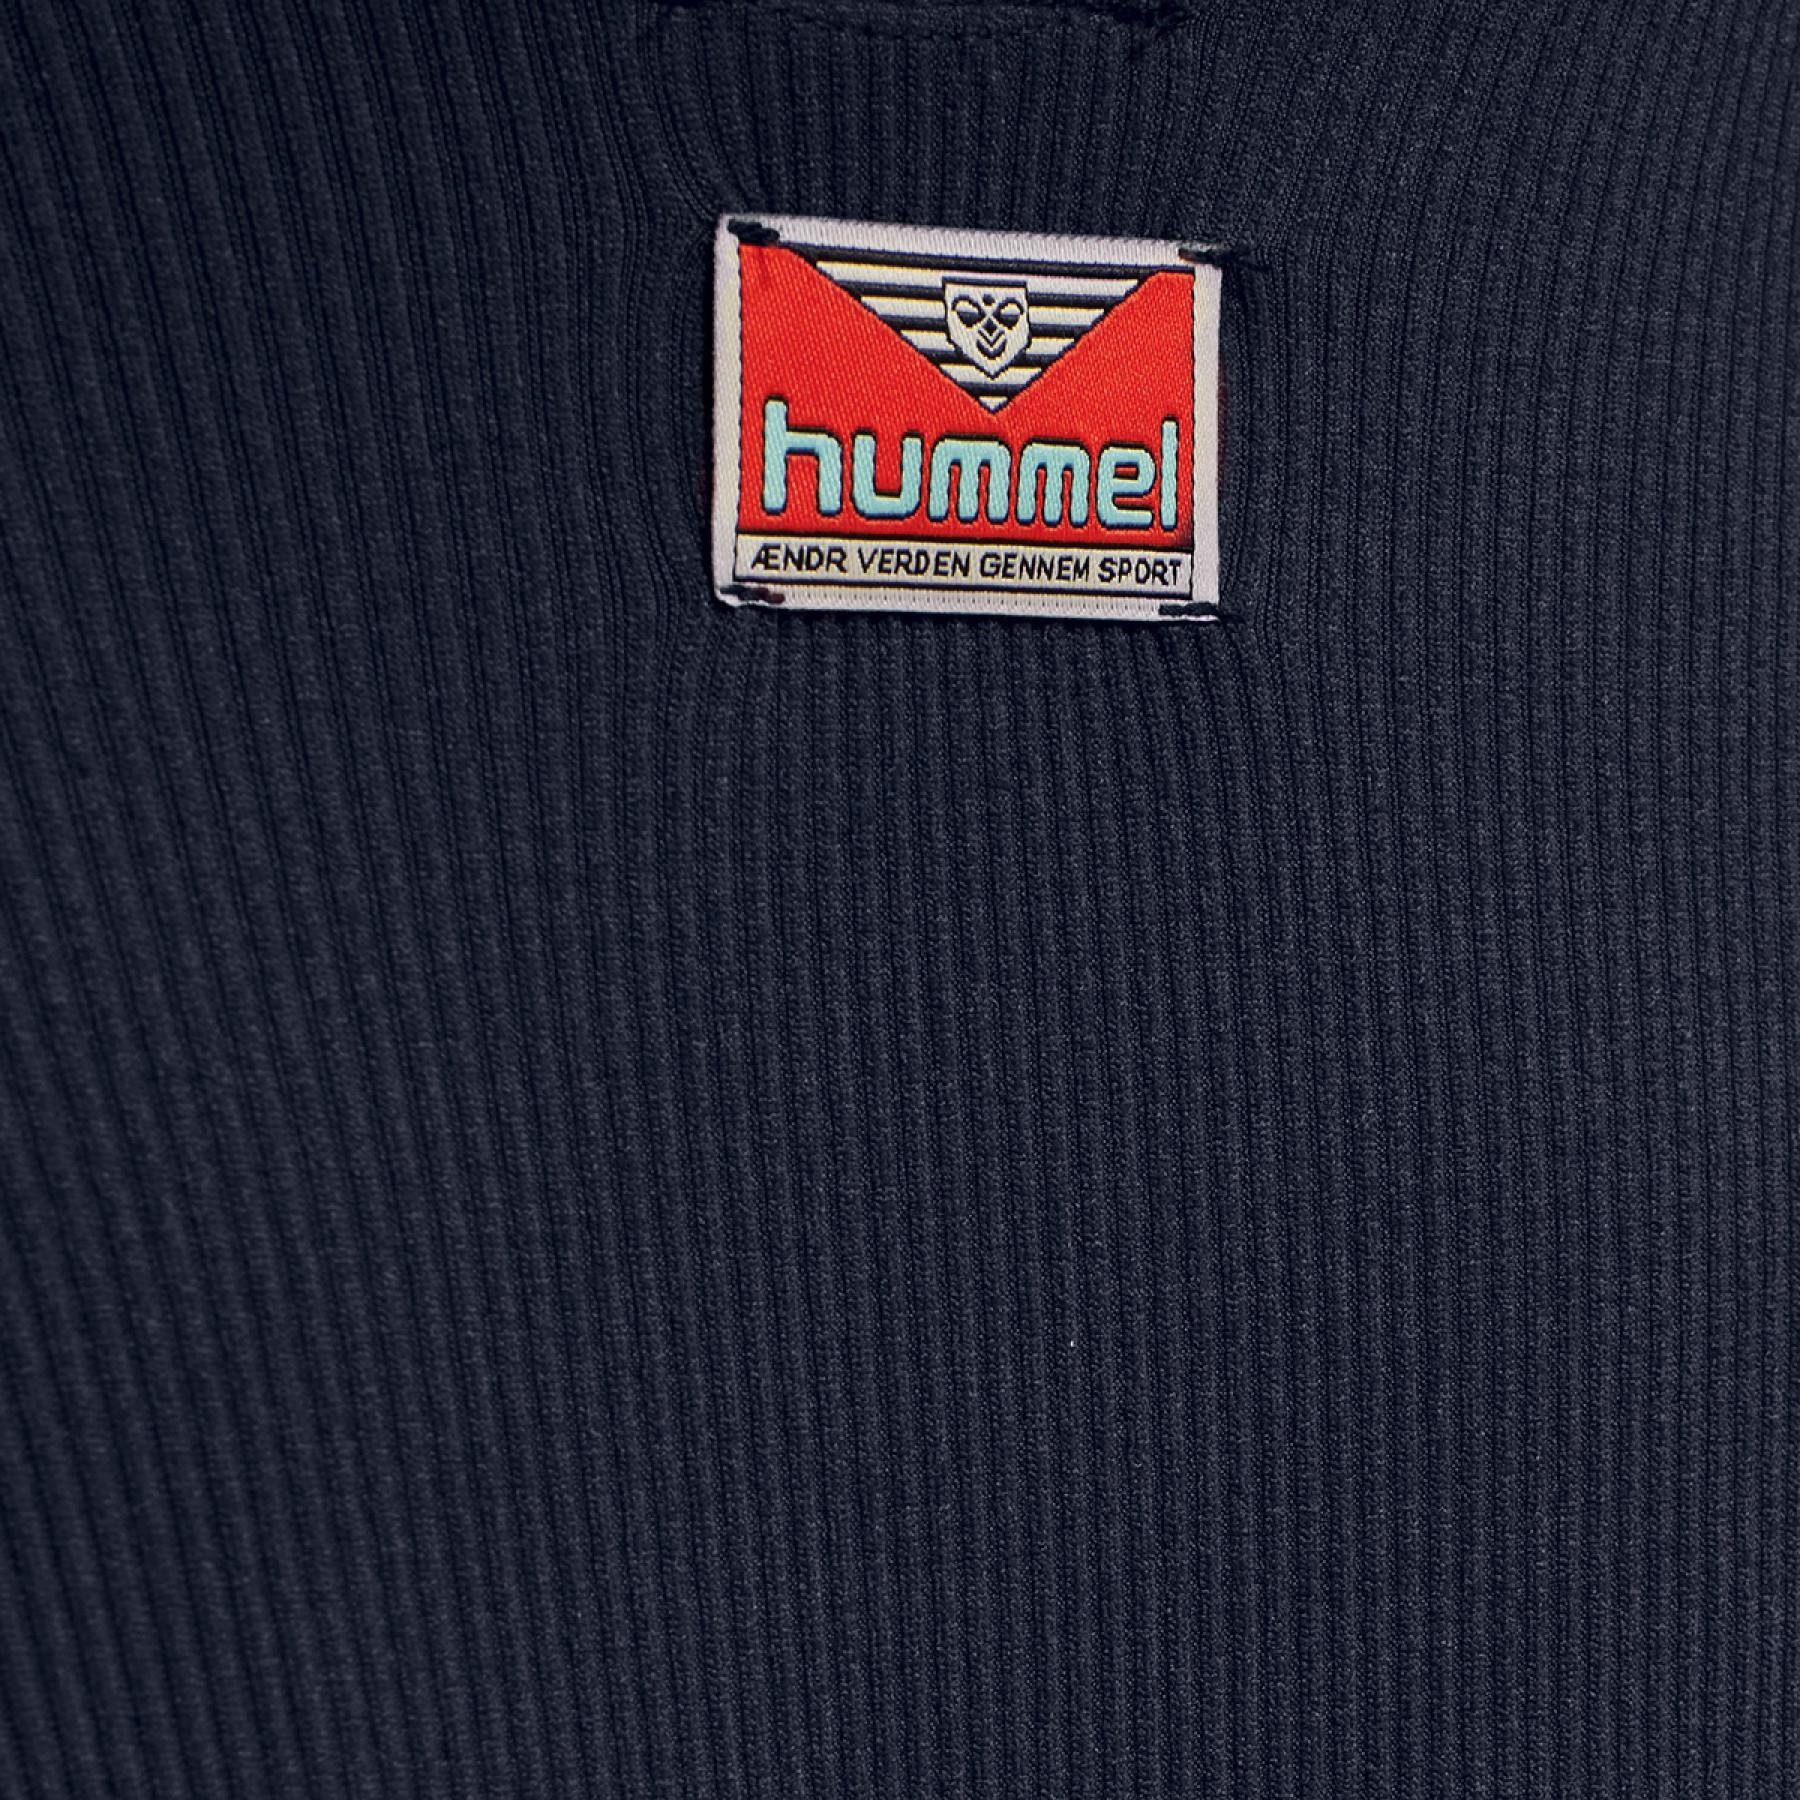 Damen-Bodysuit Hummel hmlblast seamless